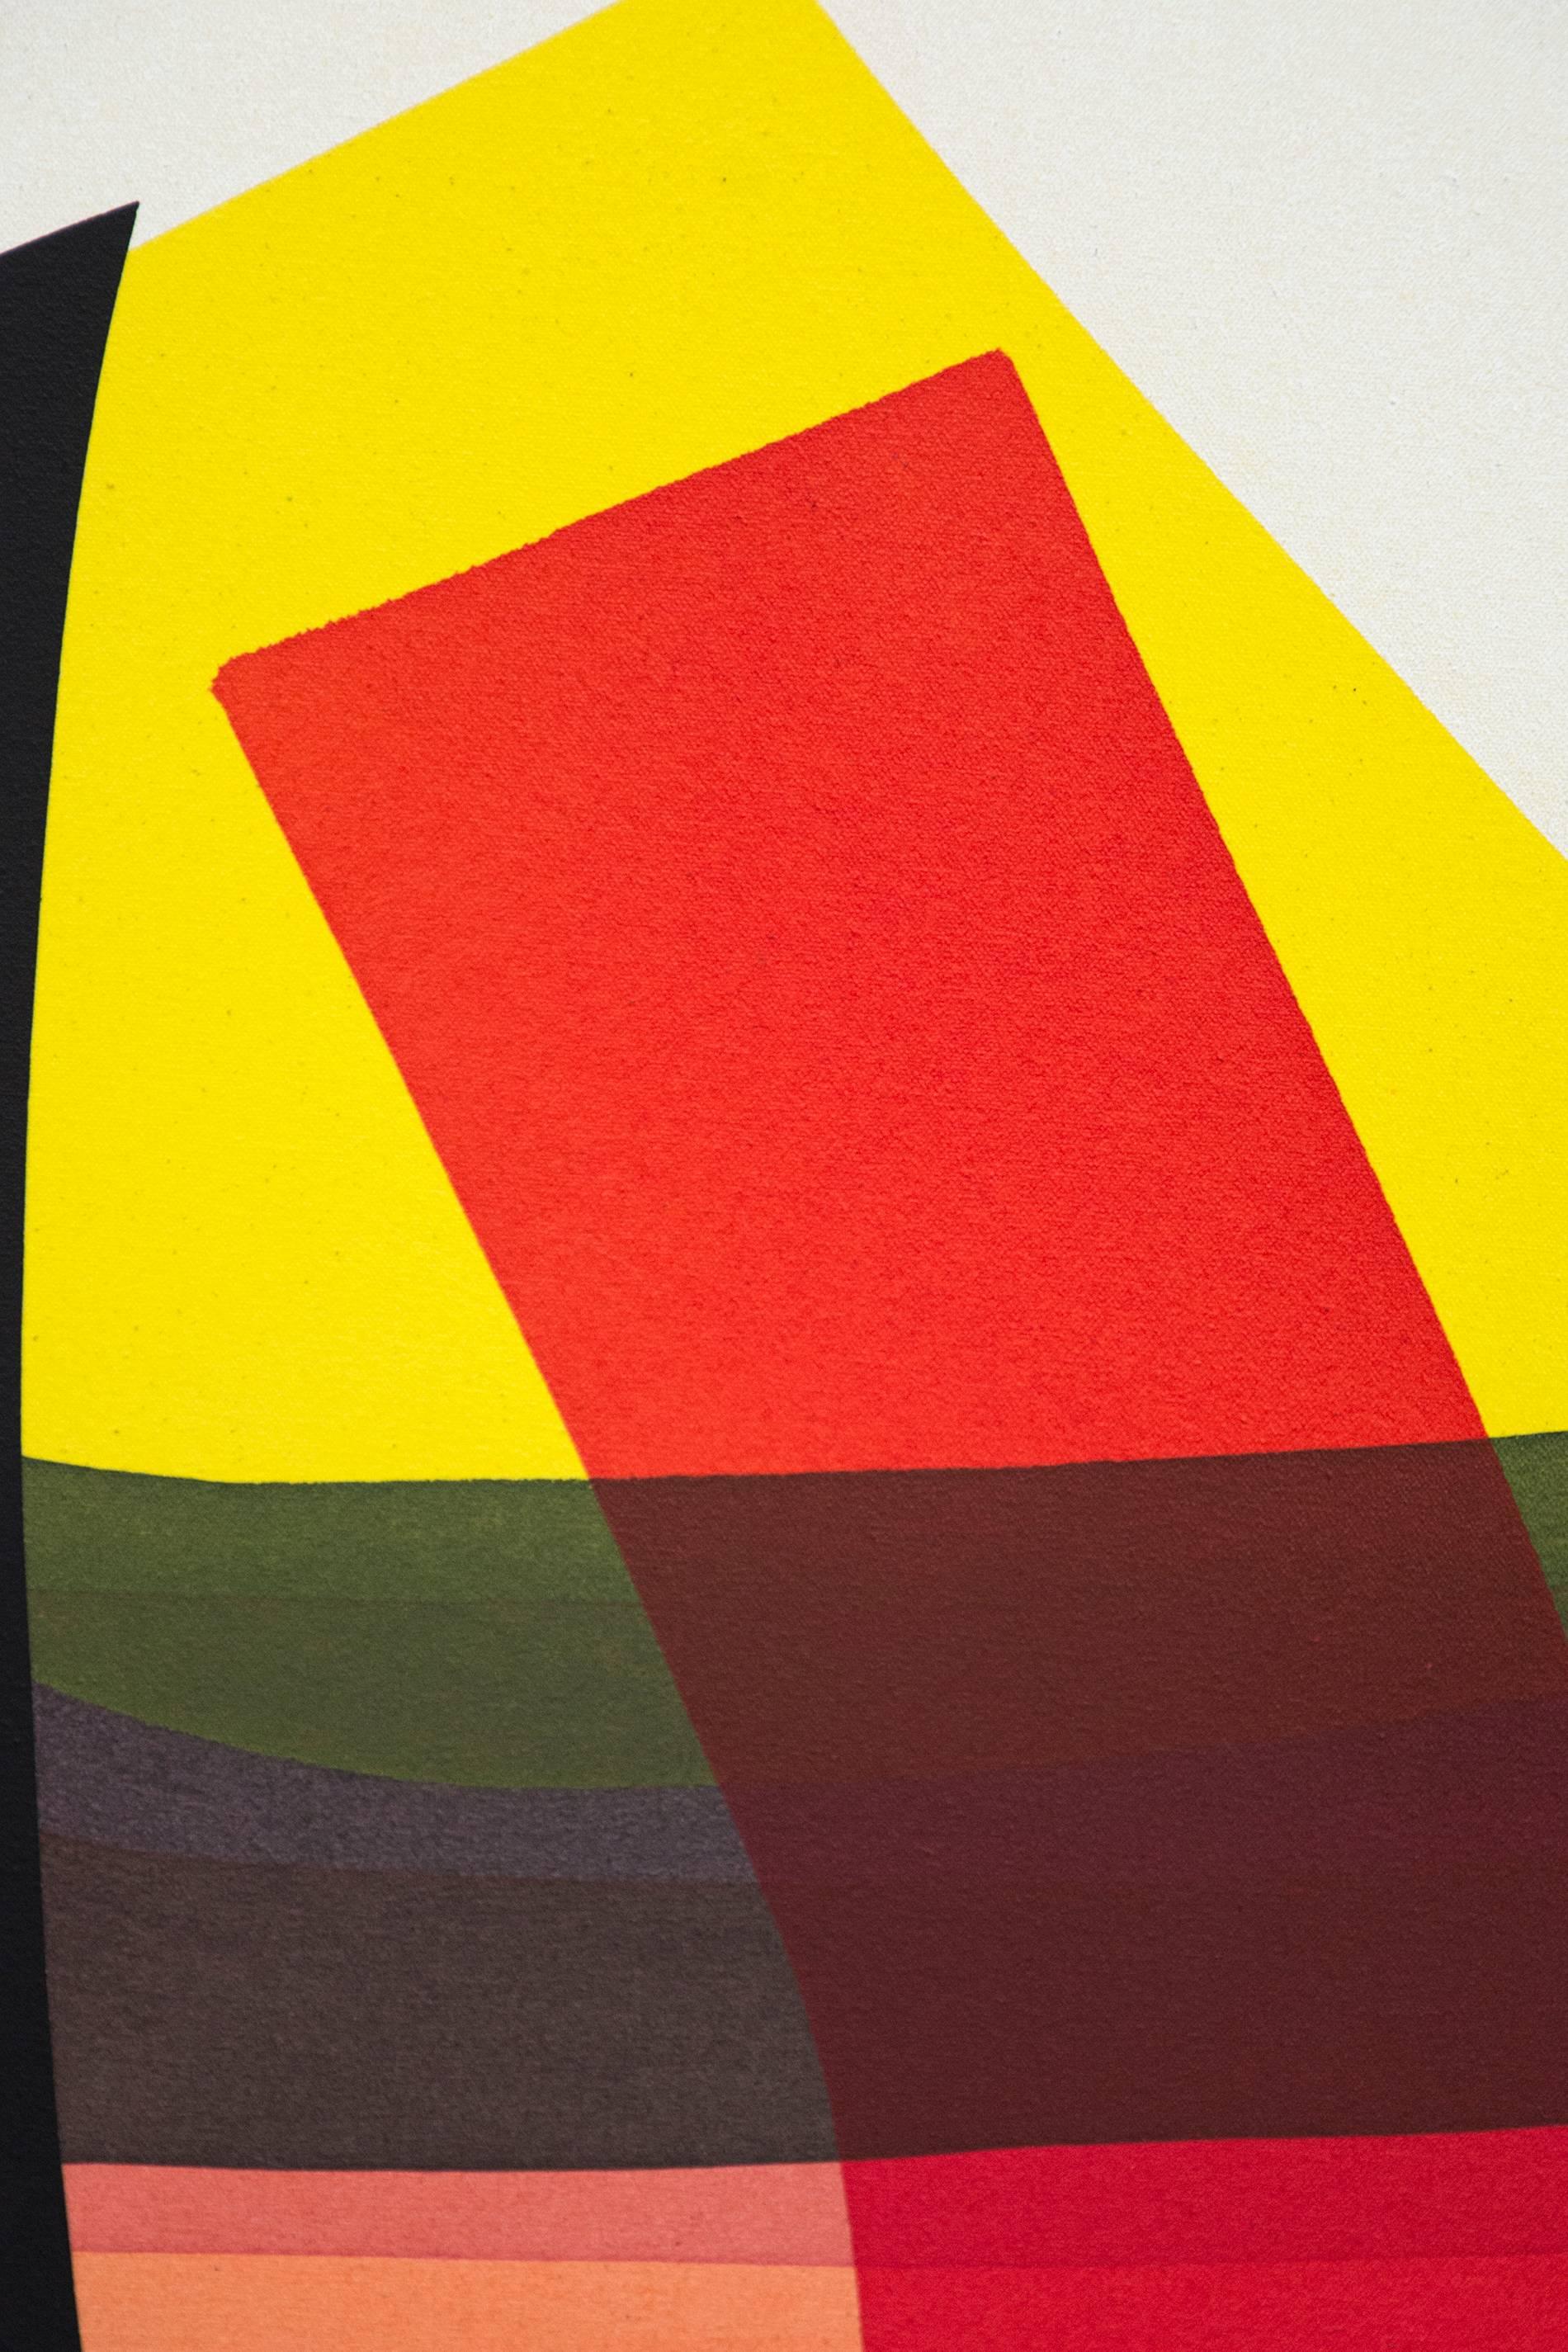 Ein auffälliger schwarzer Torbogen zieht den Betrachter in dieser abstrakten Komposition von Aron Hill in eine Welt voller lebendiger Farben. Reine Acryltuschen in Rot, Blassorange, Grün, Hellgelb, Blassgrün und Grau überschneiden sich mit klarem